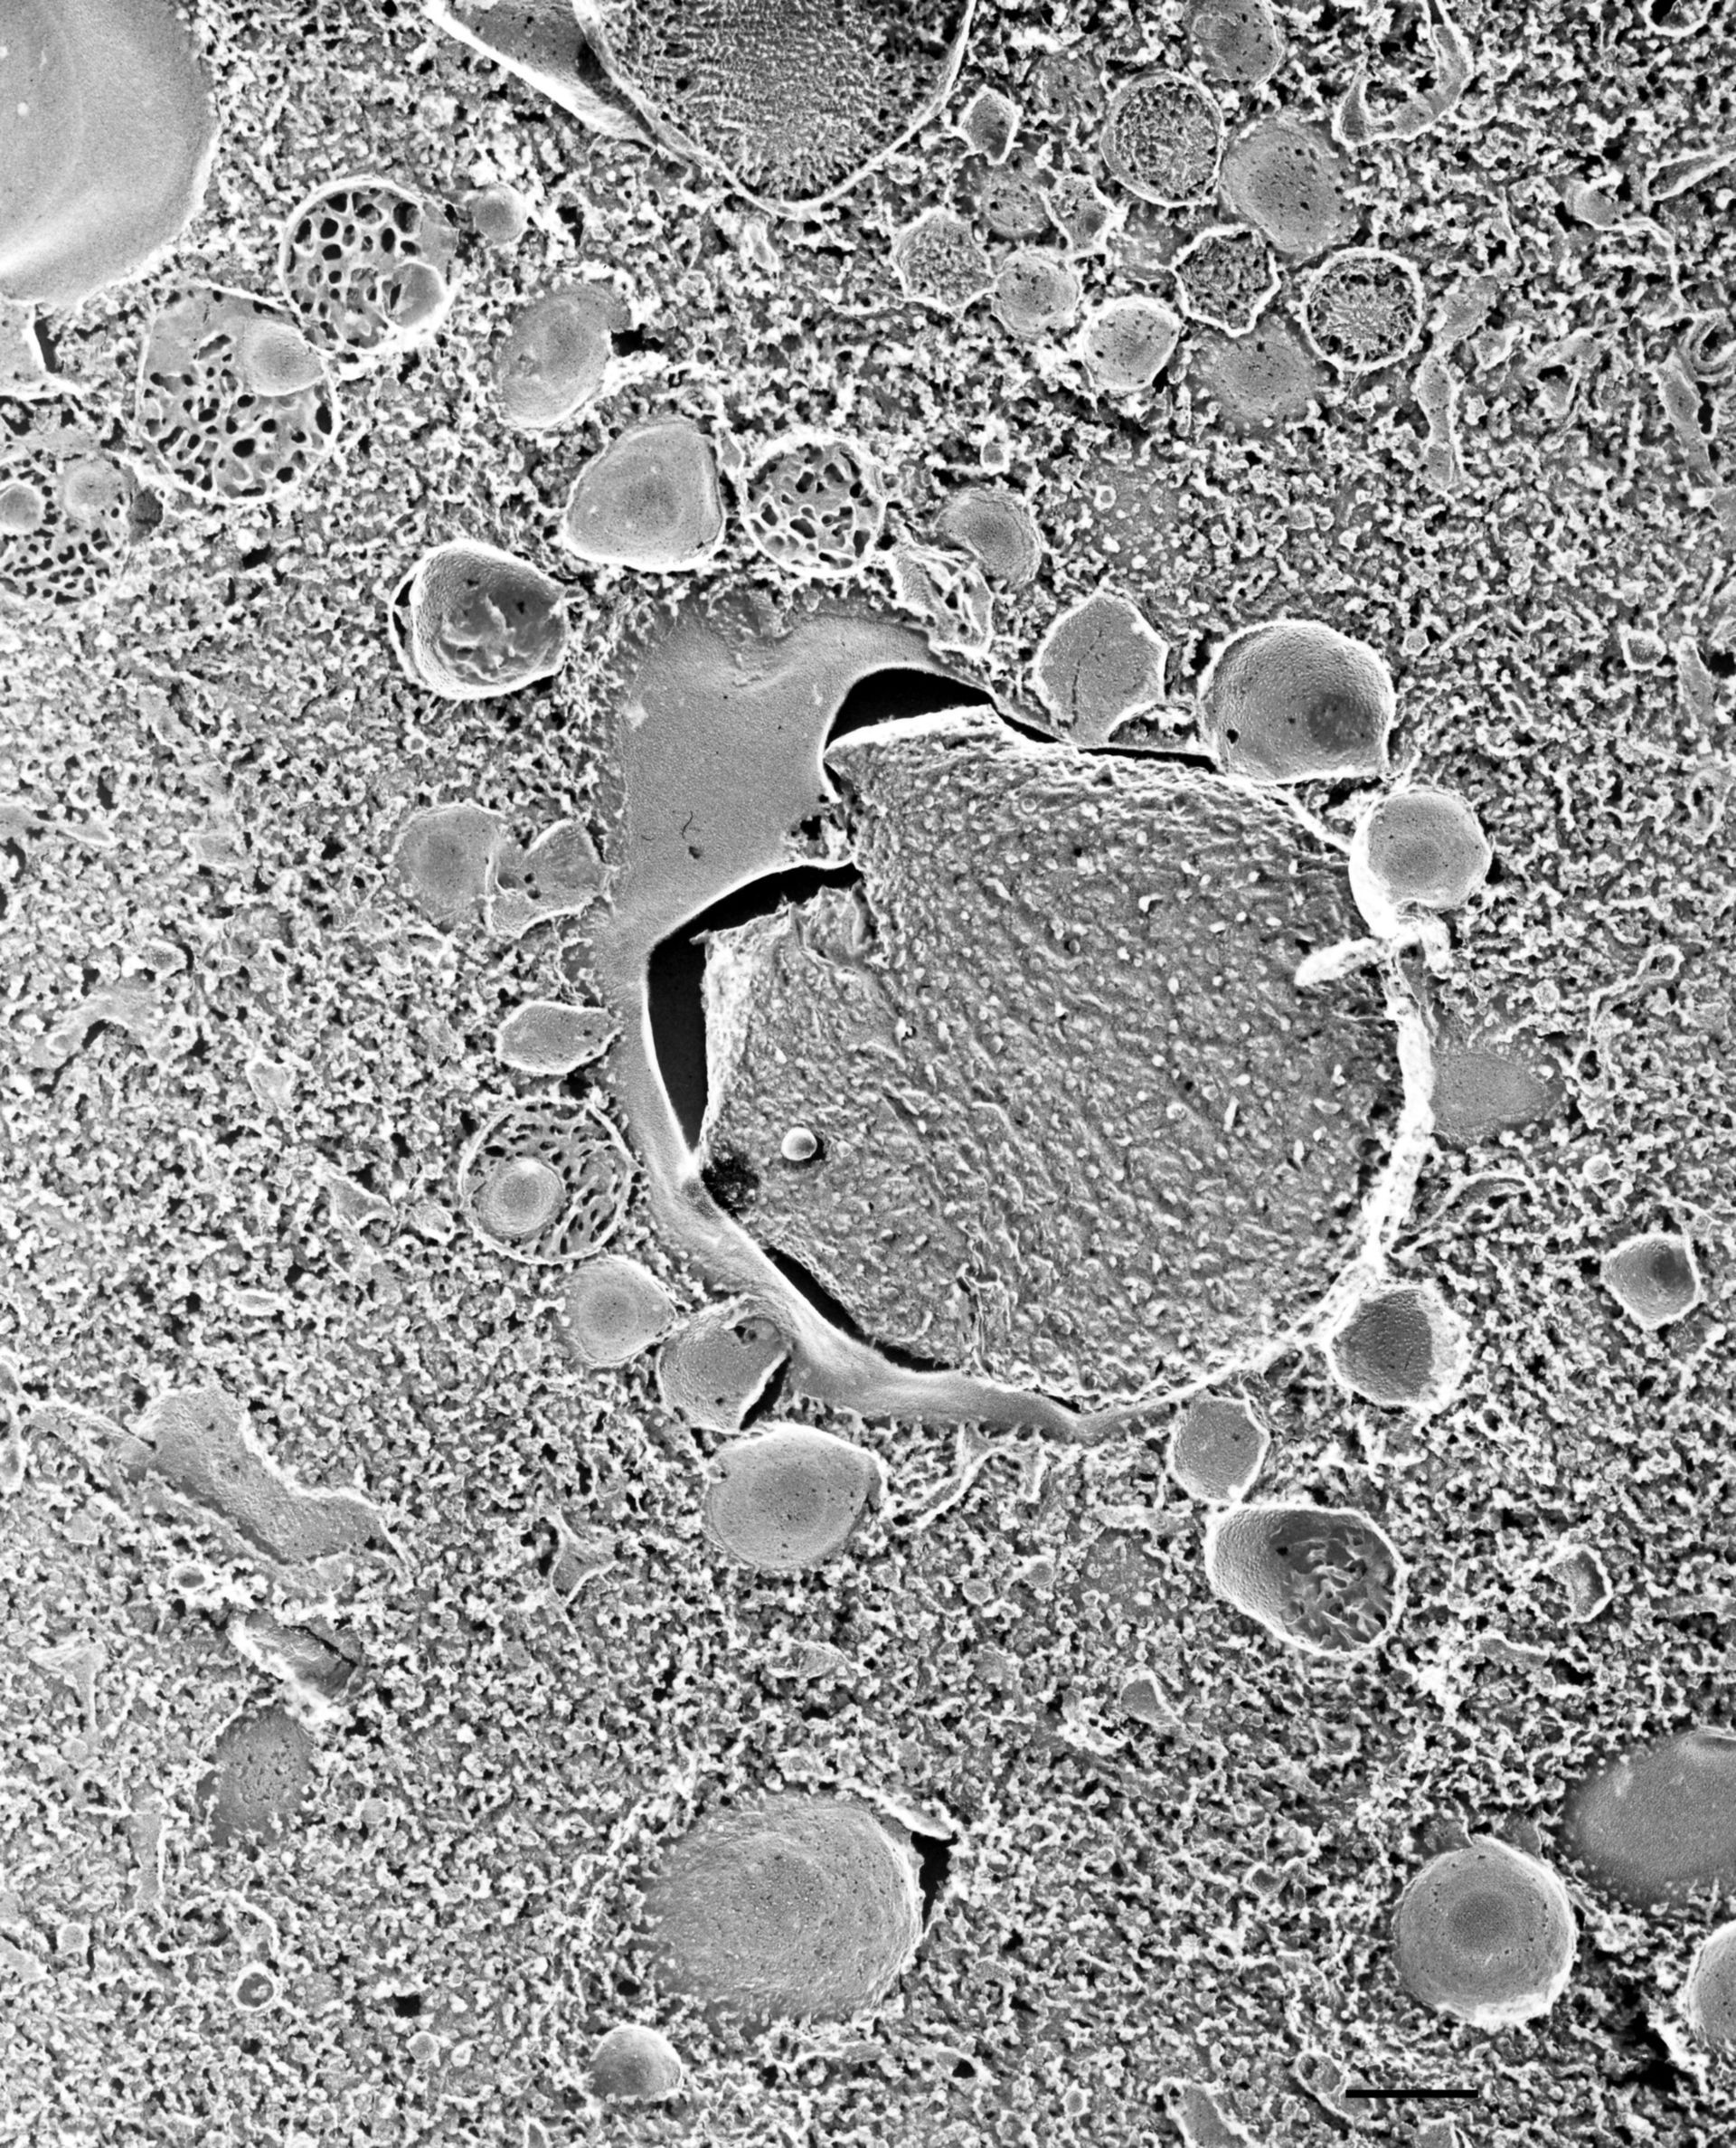 Paramecium multimicronucleatum (Trichocyst) - CIL:36718